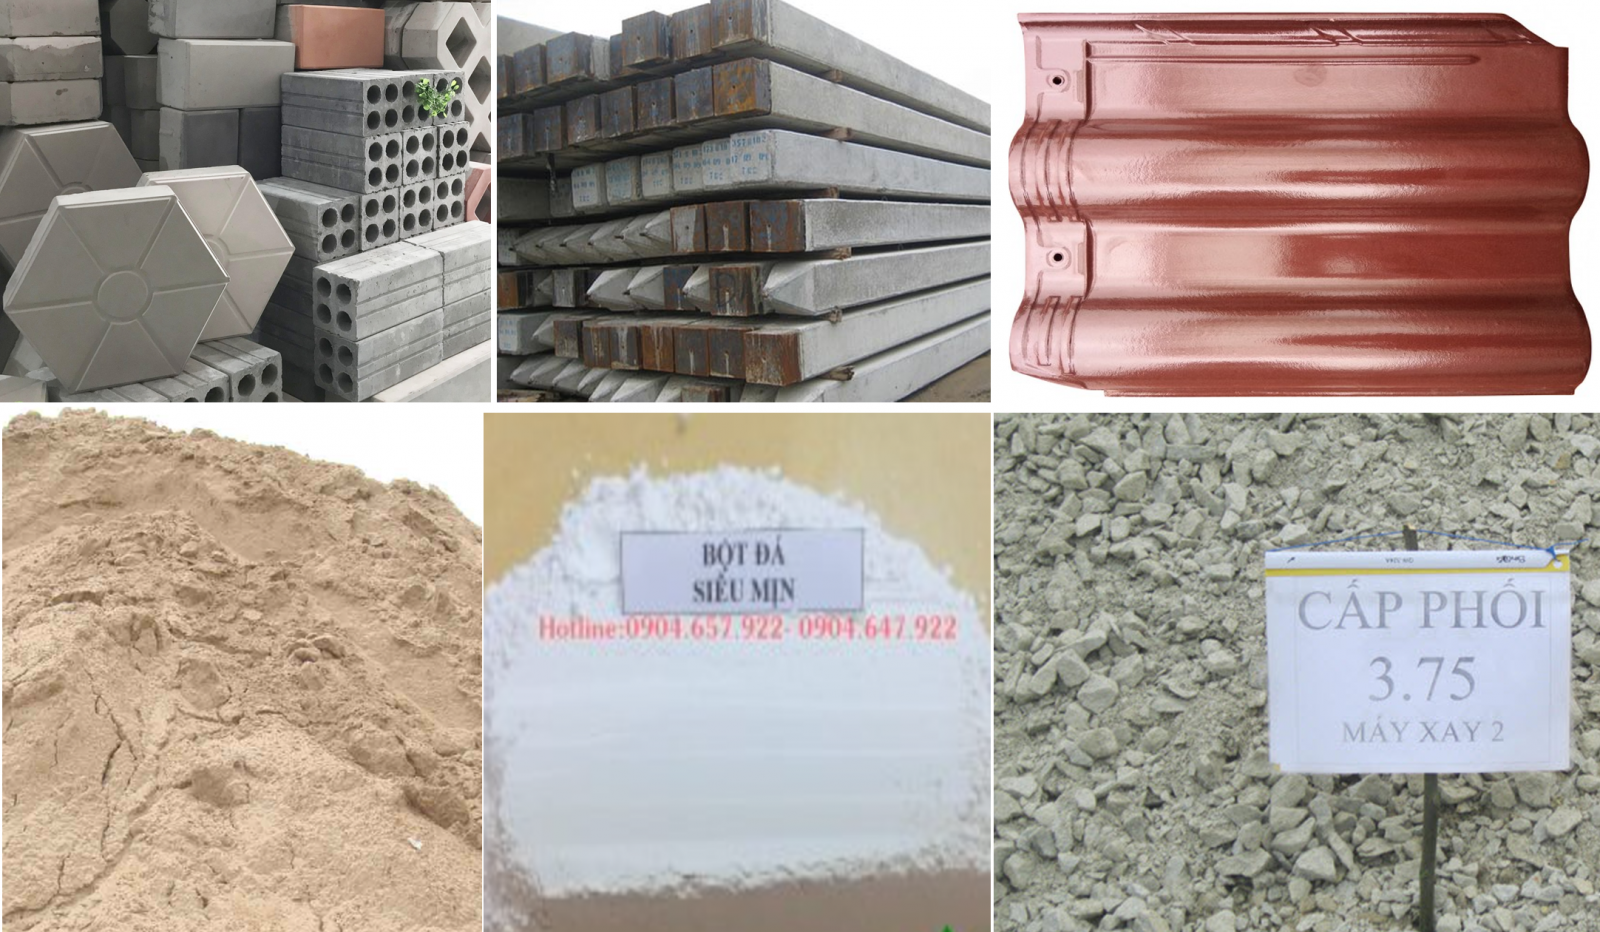 Danh mục các sản phẩm vật liệu xây dựng thực hiện chứng nhận hợp chuẩn